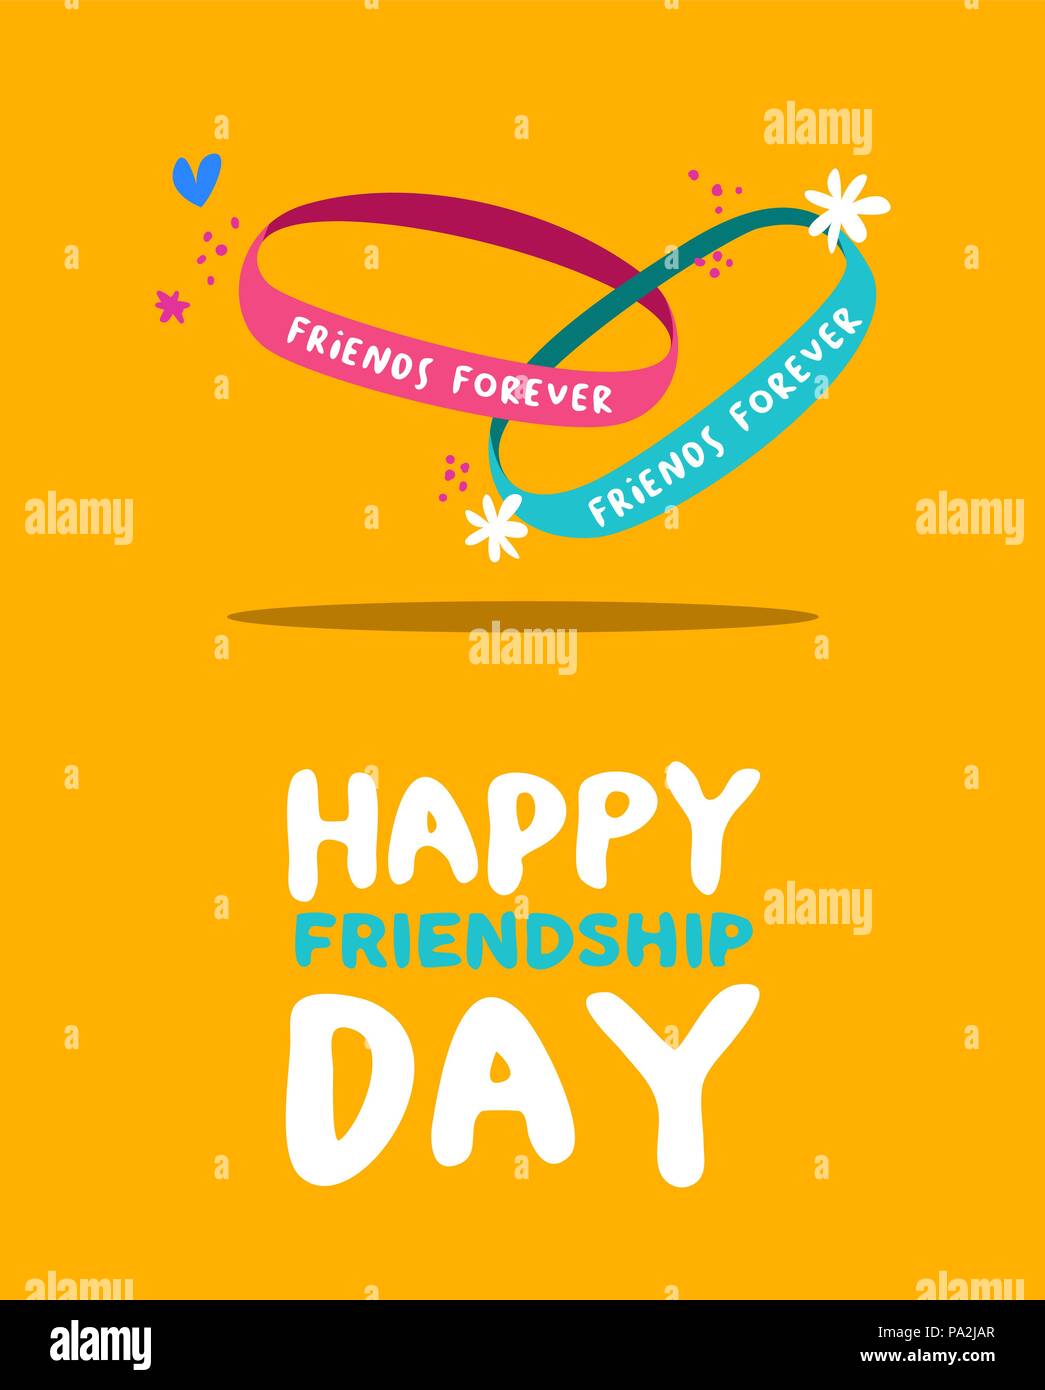 La Journée de l'amitié heureuse carte de souhaits pour des vacances, des amis pour toujours avec bracelet mignon décoration dessiné à la main. Vecteur EPS10. Illustration de Vecteur